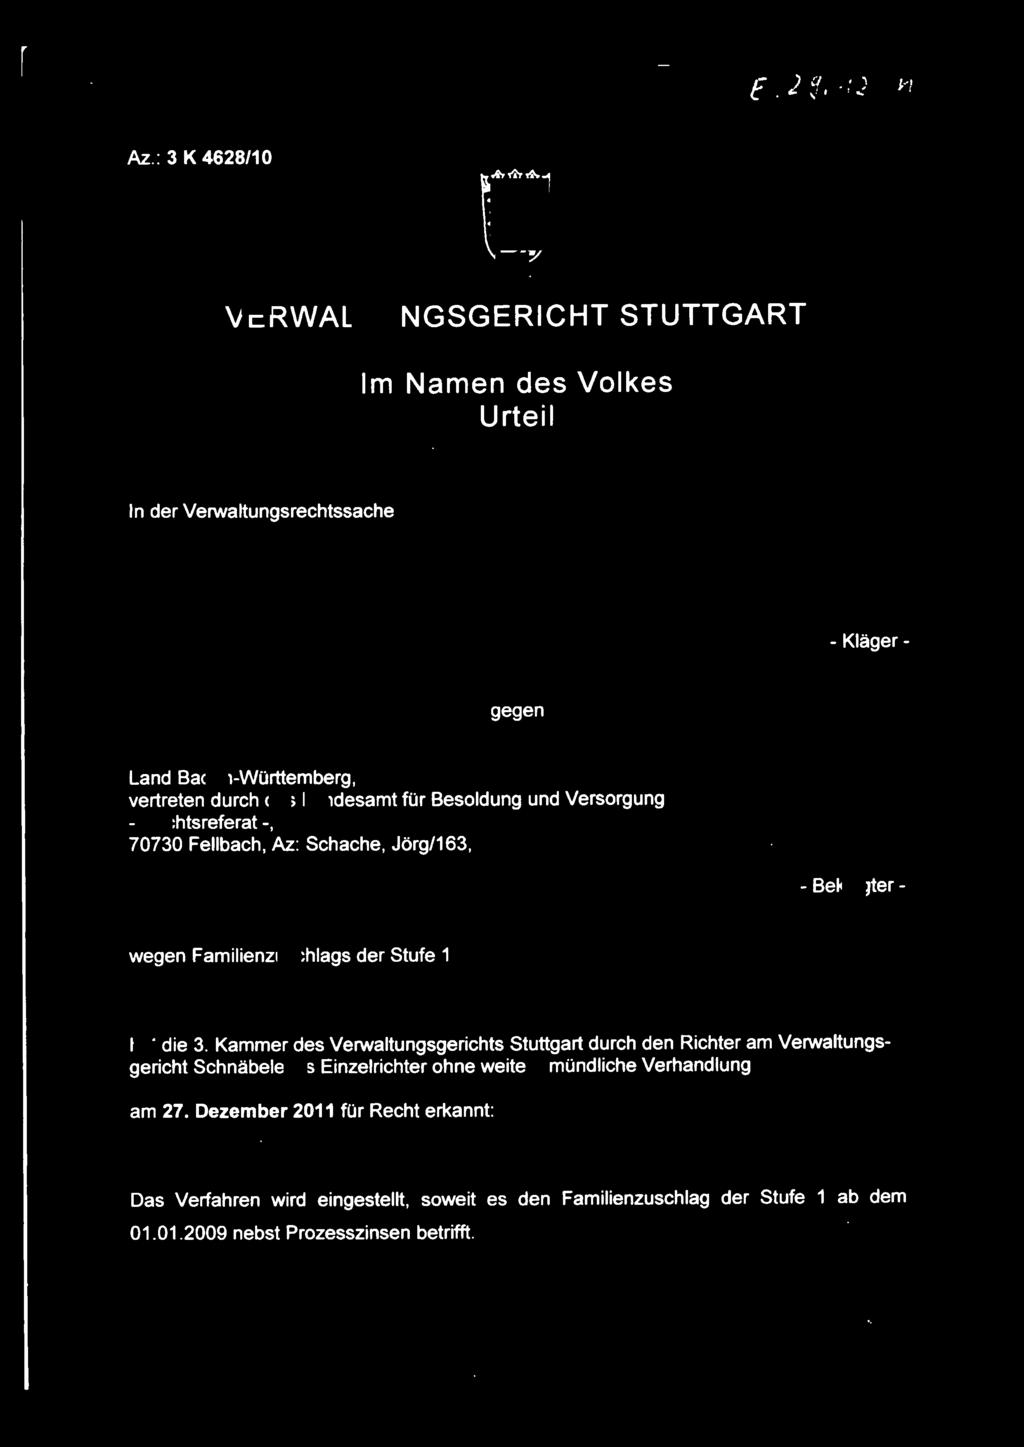 Besoldung und Versorgung - Rechtsreferat -, 70730 Fellbach, Az: Schache, Jörg/163, - Beklagter - wegen